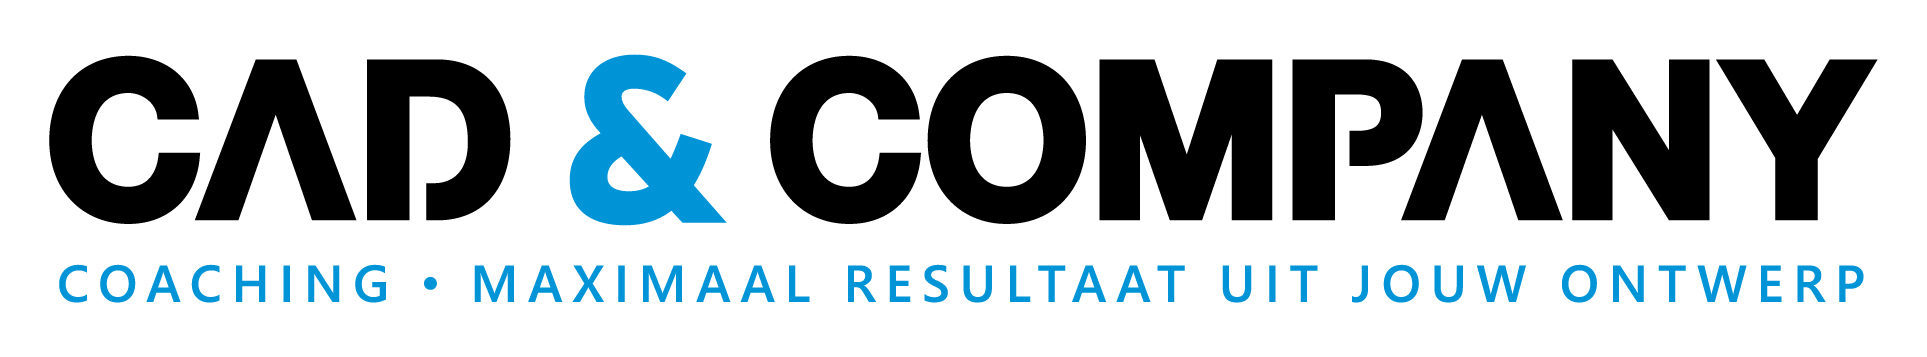 Cad-company logo 2-1